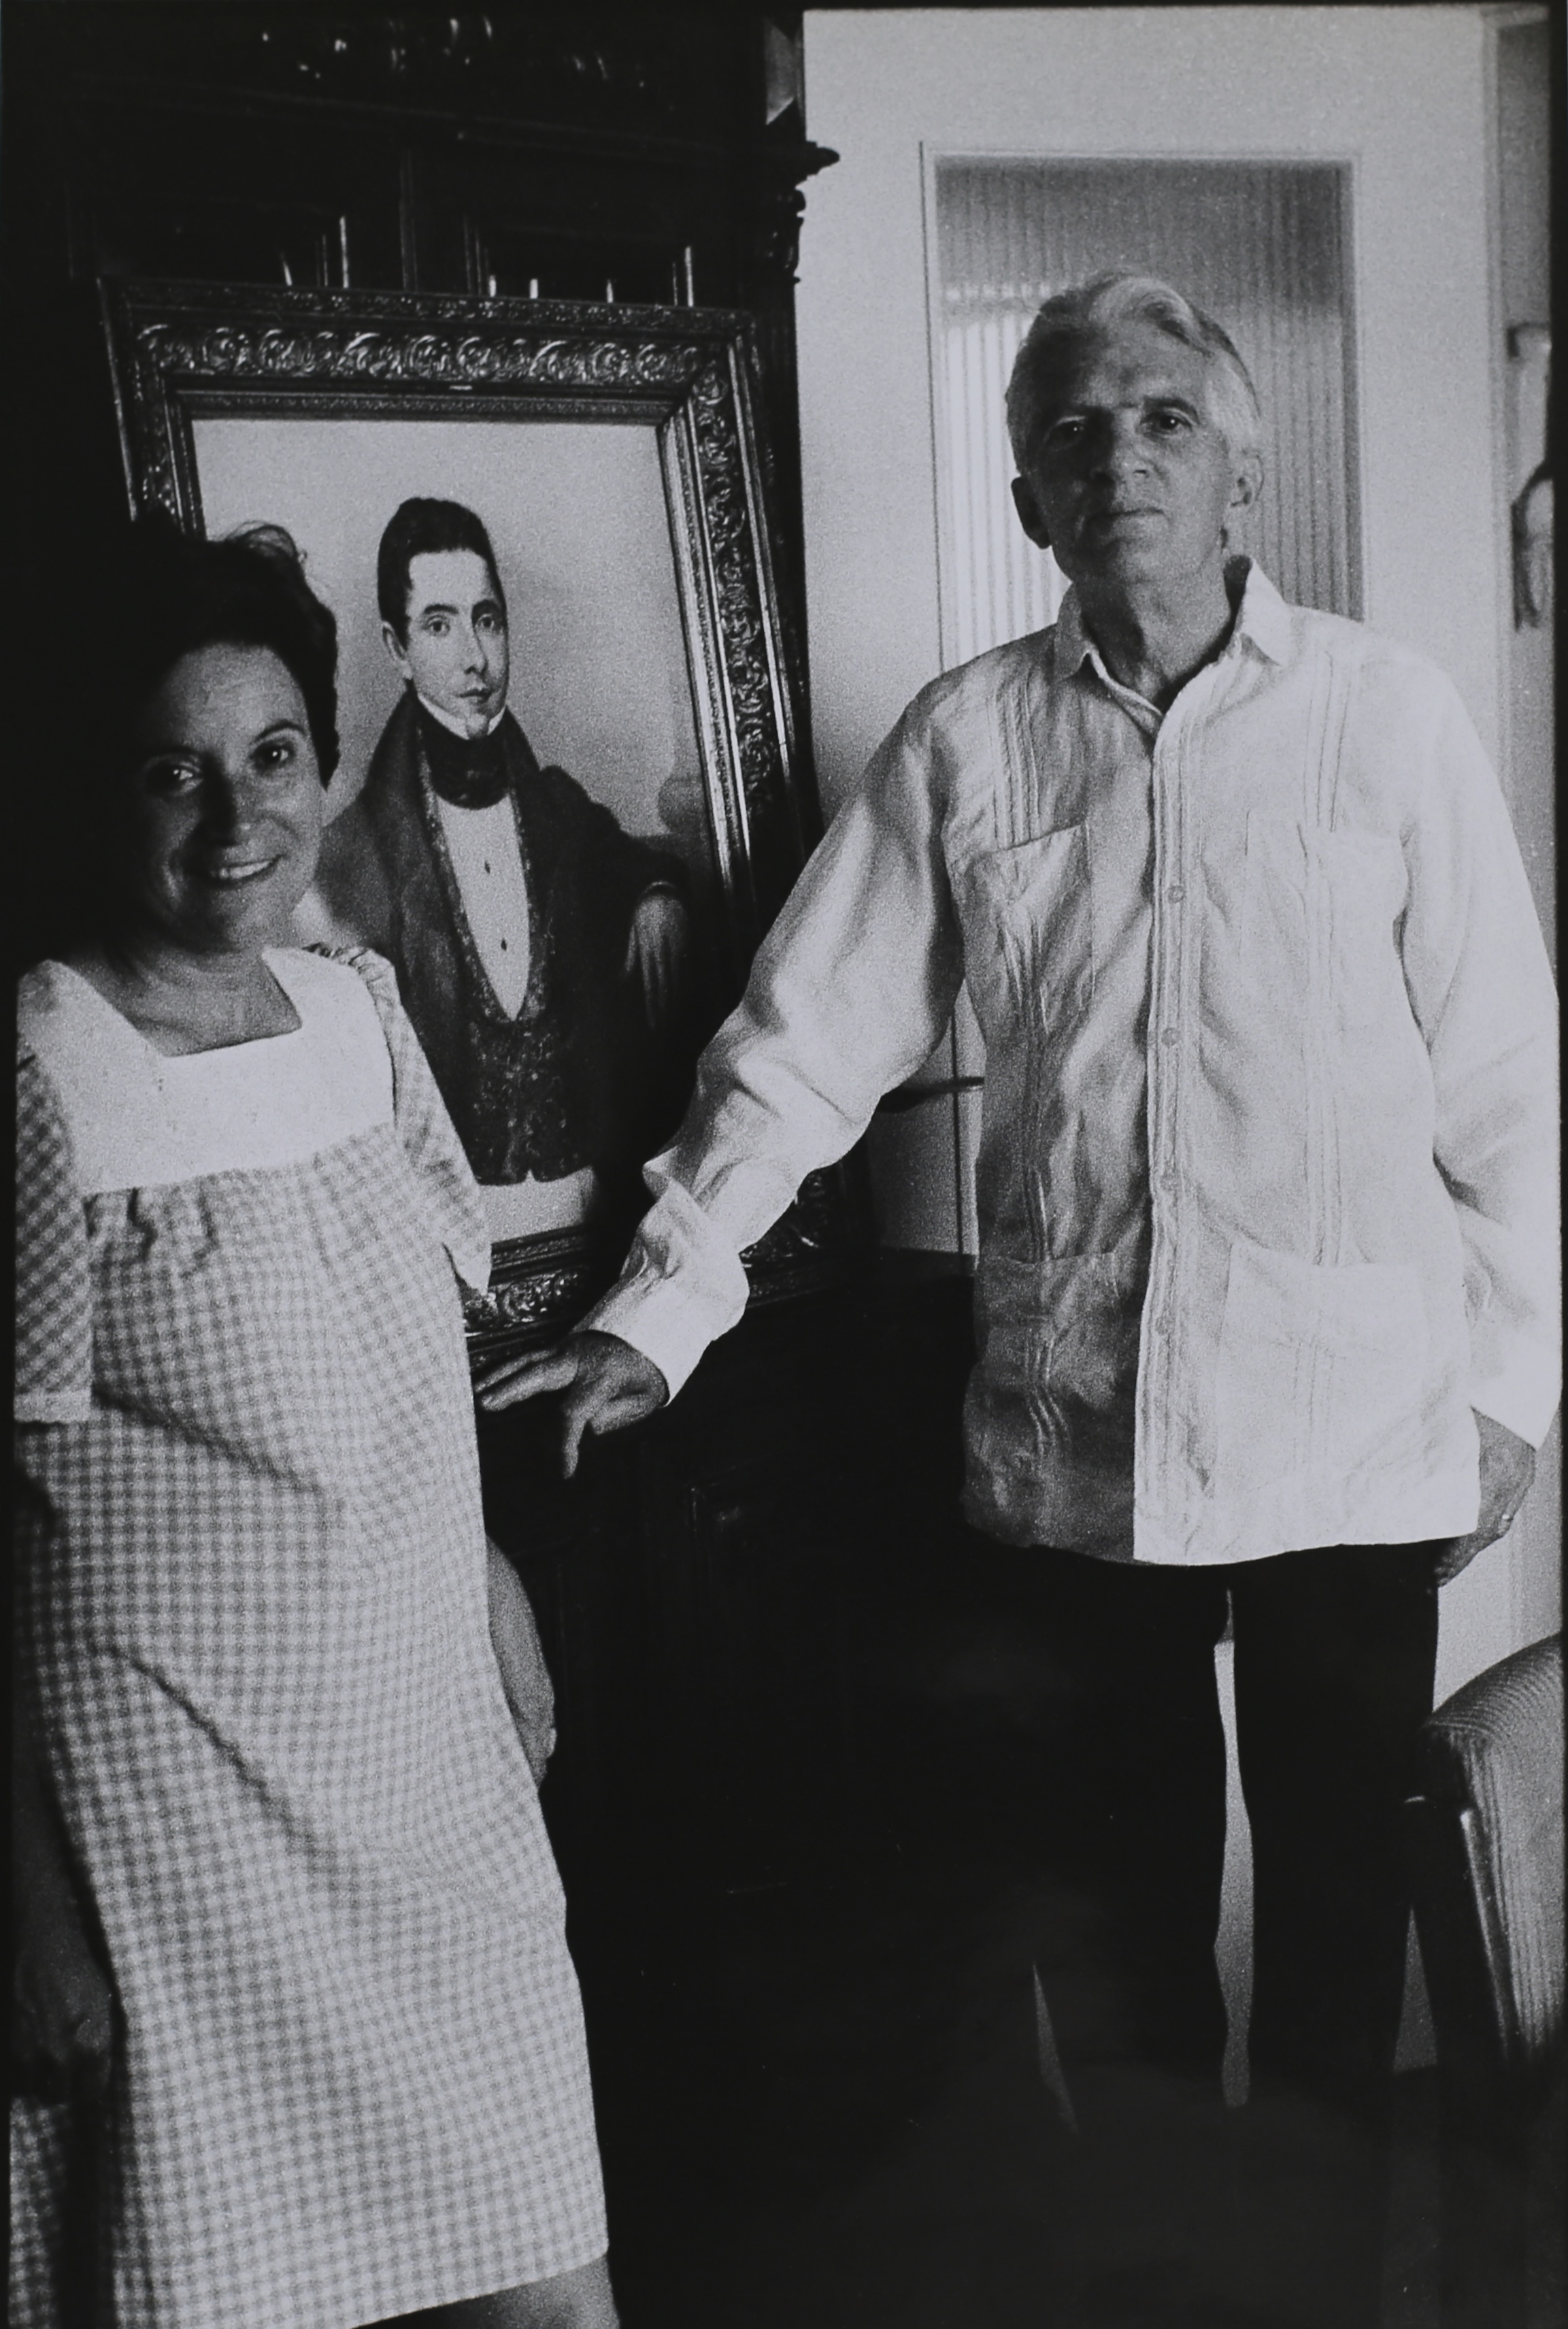   Blas de Otero con la moglie, poeta. Madrid, 1976.  